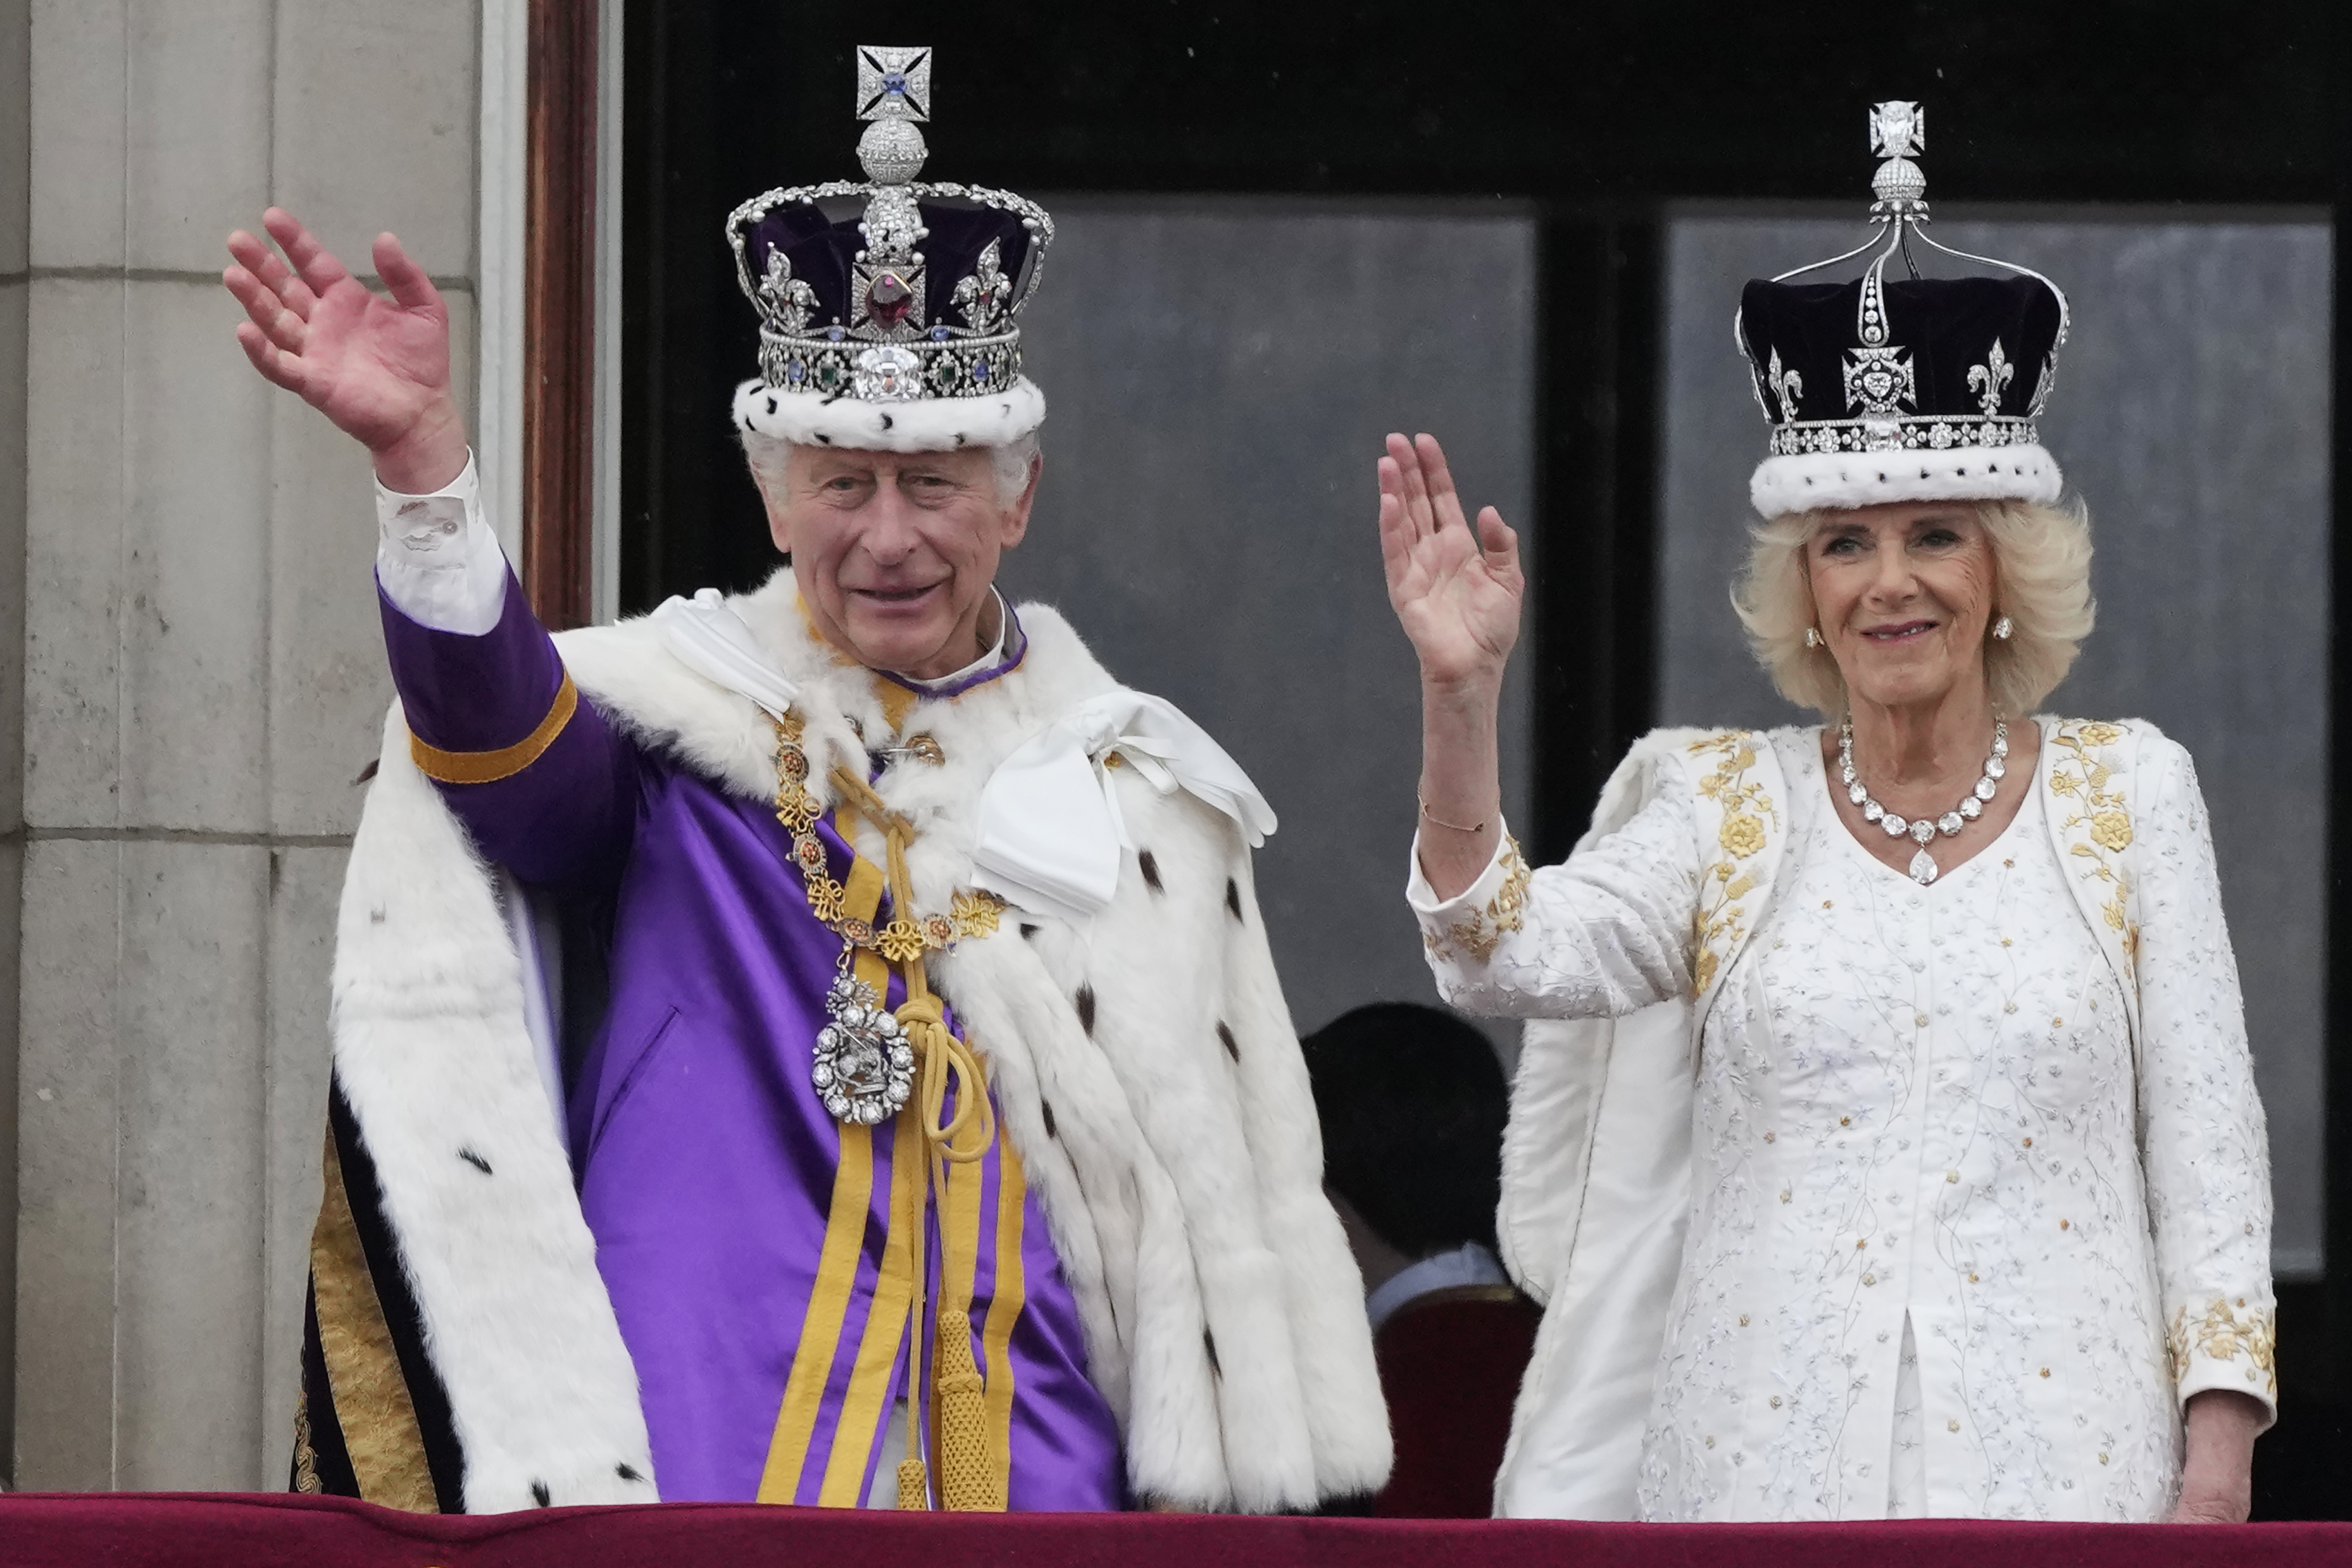 William est là pour le roi Charles depuis son couronnement l'année dernière, selon l'expert royal Robert Jobson